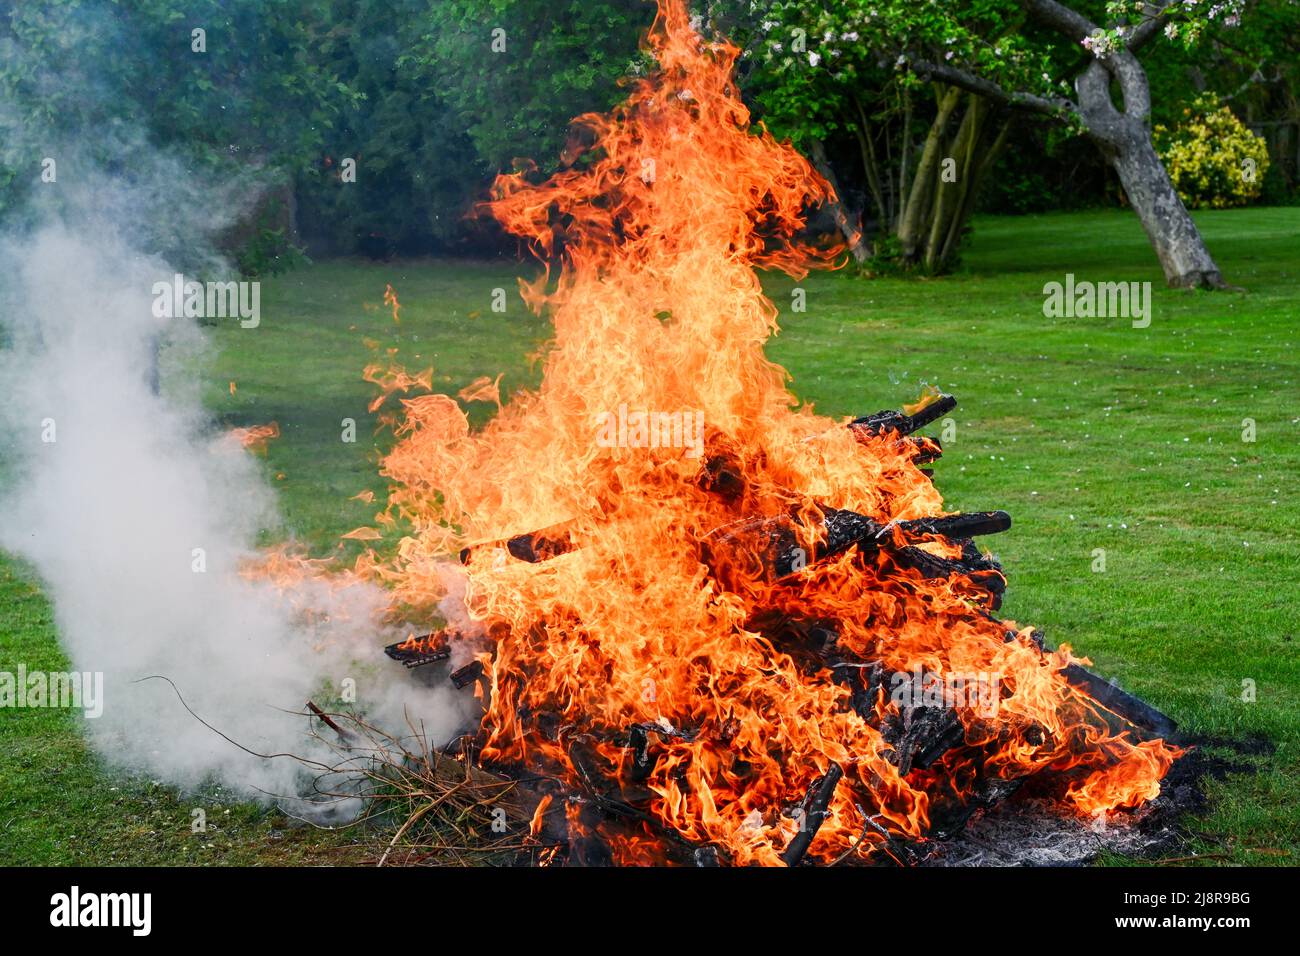 Una fogata de jardín con llamas y humo que brota desde el lateral Foto de stock